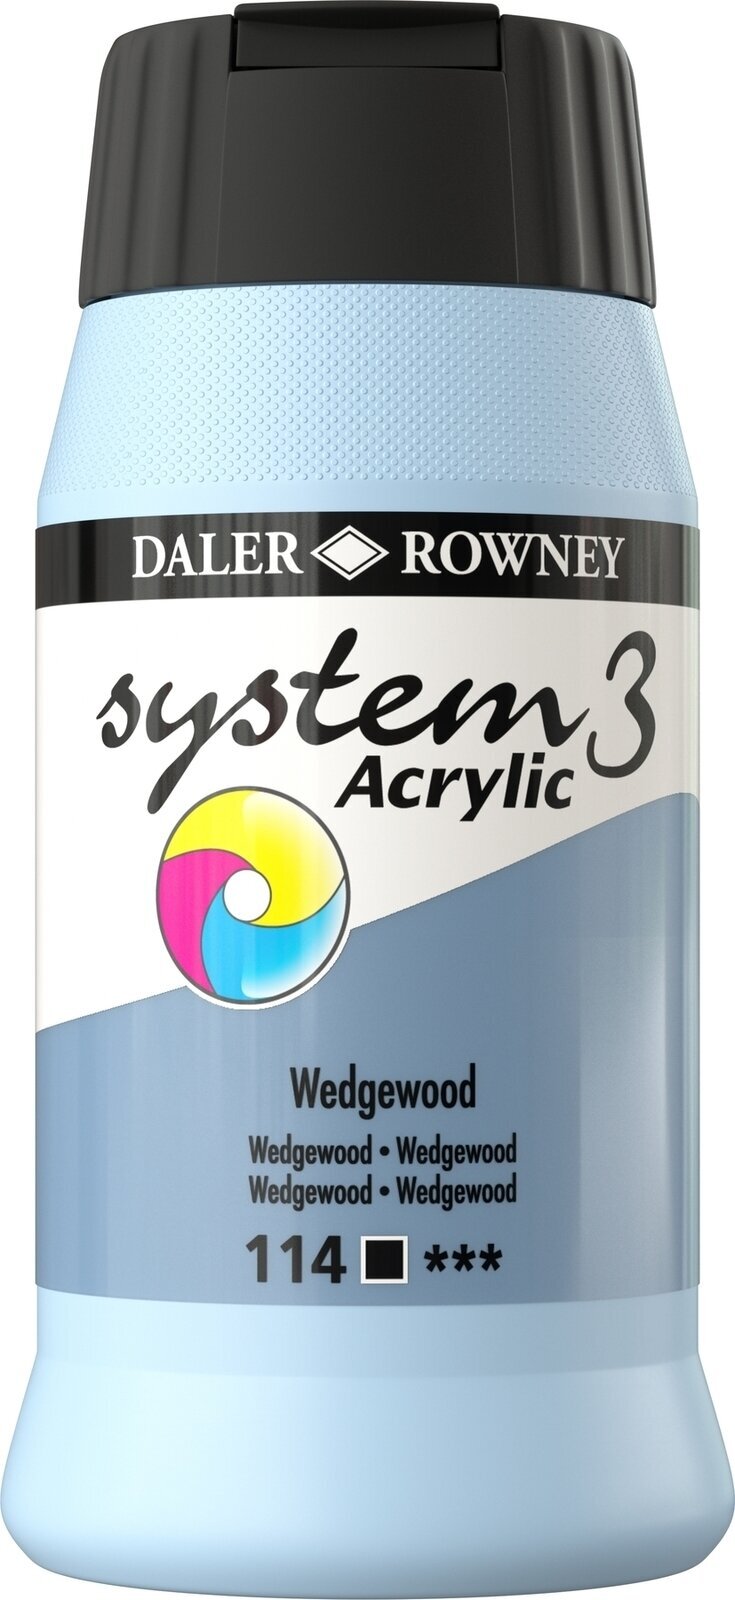 Tinta acrílica Daler Rowney System3 Tinta acrílica Wedgewood 500 ml 1 un.